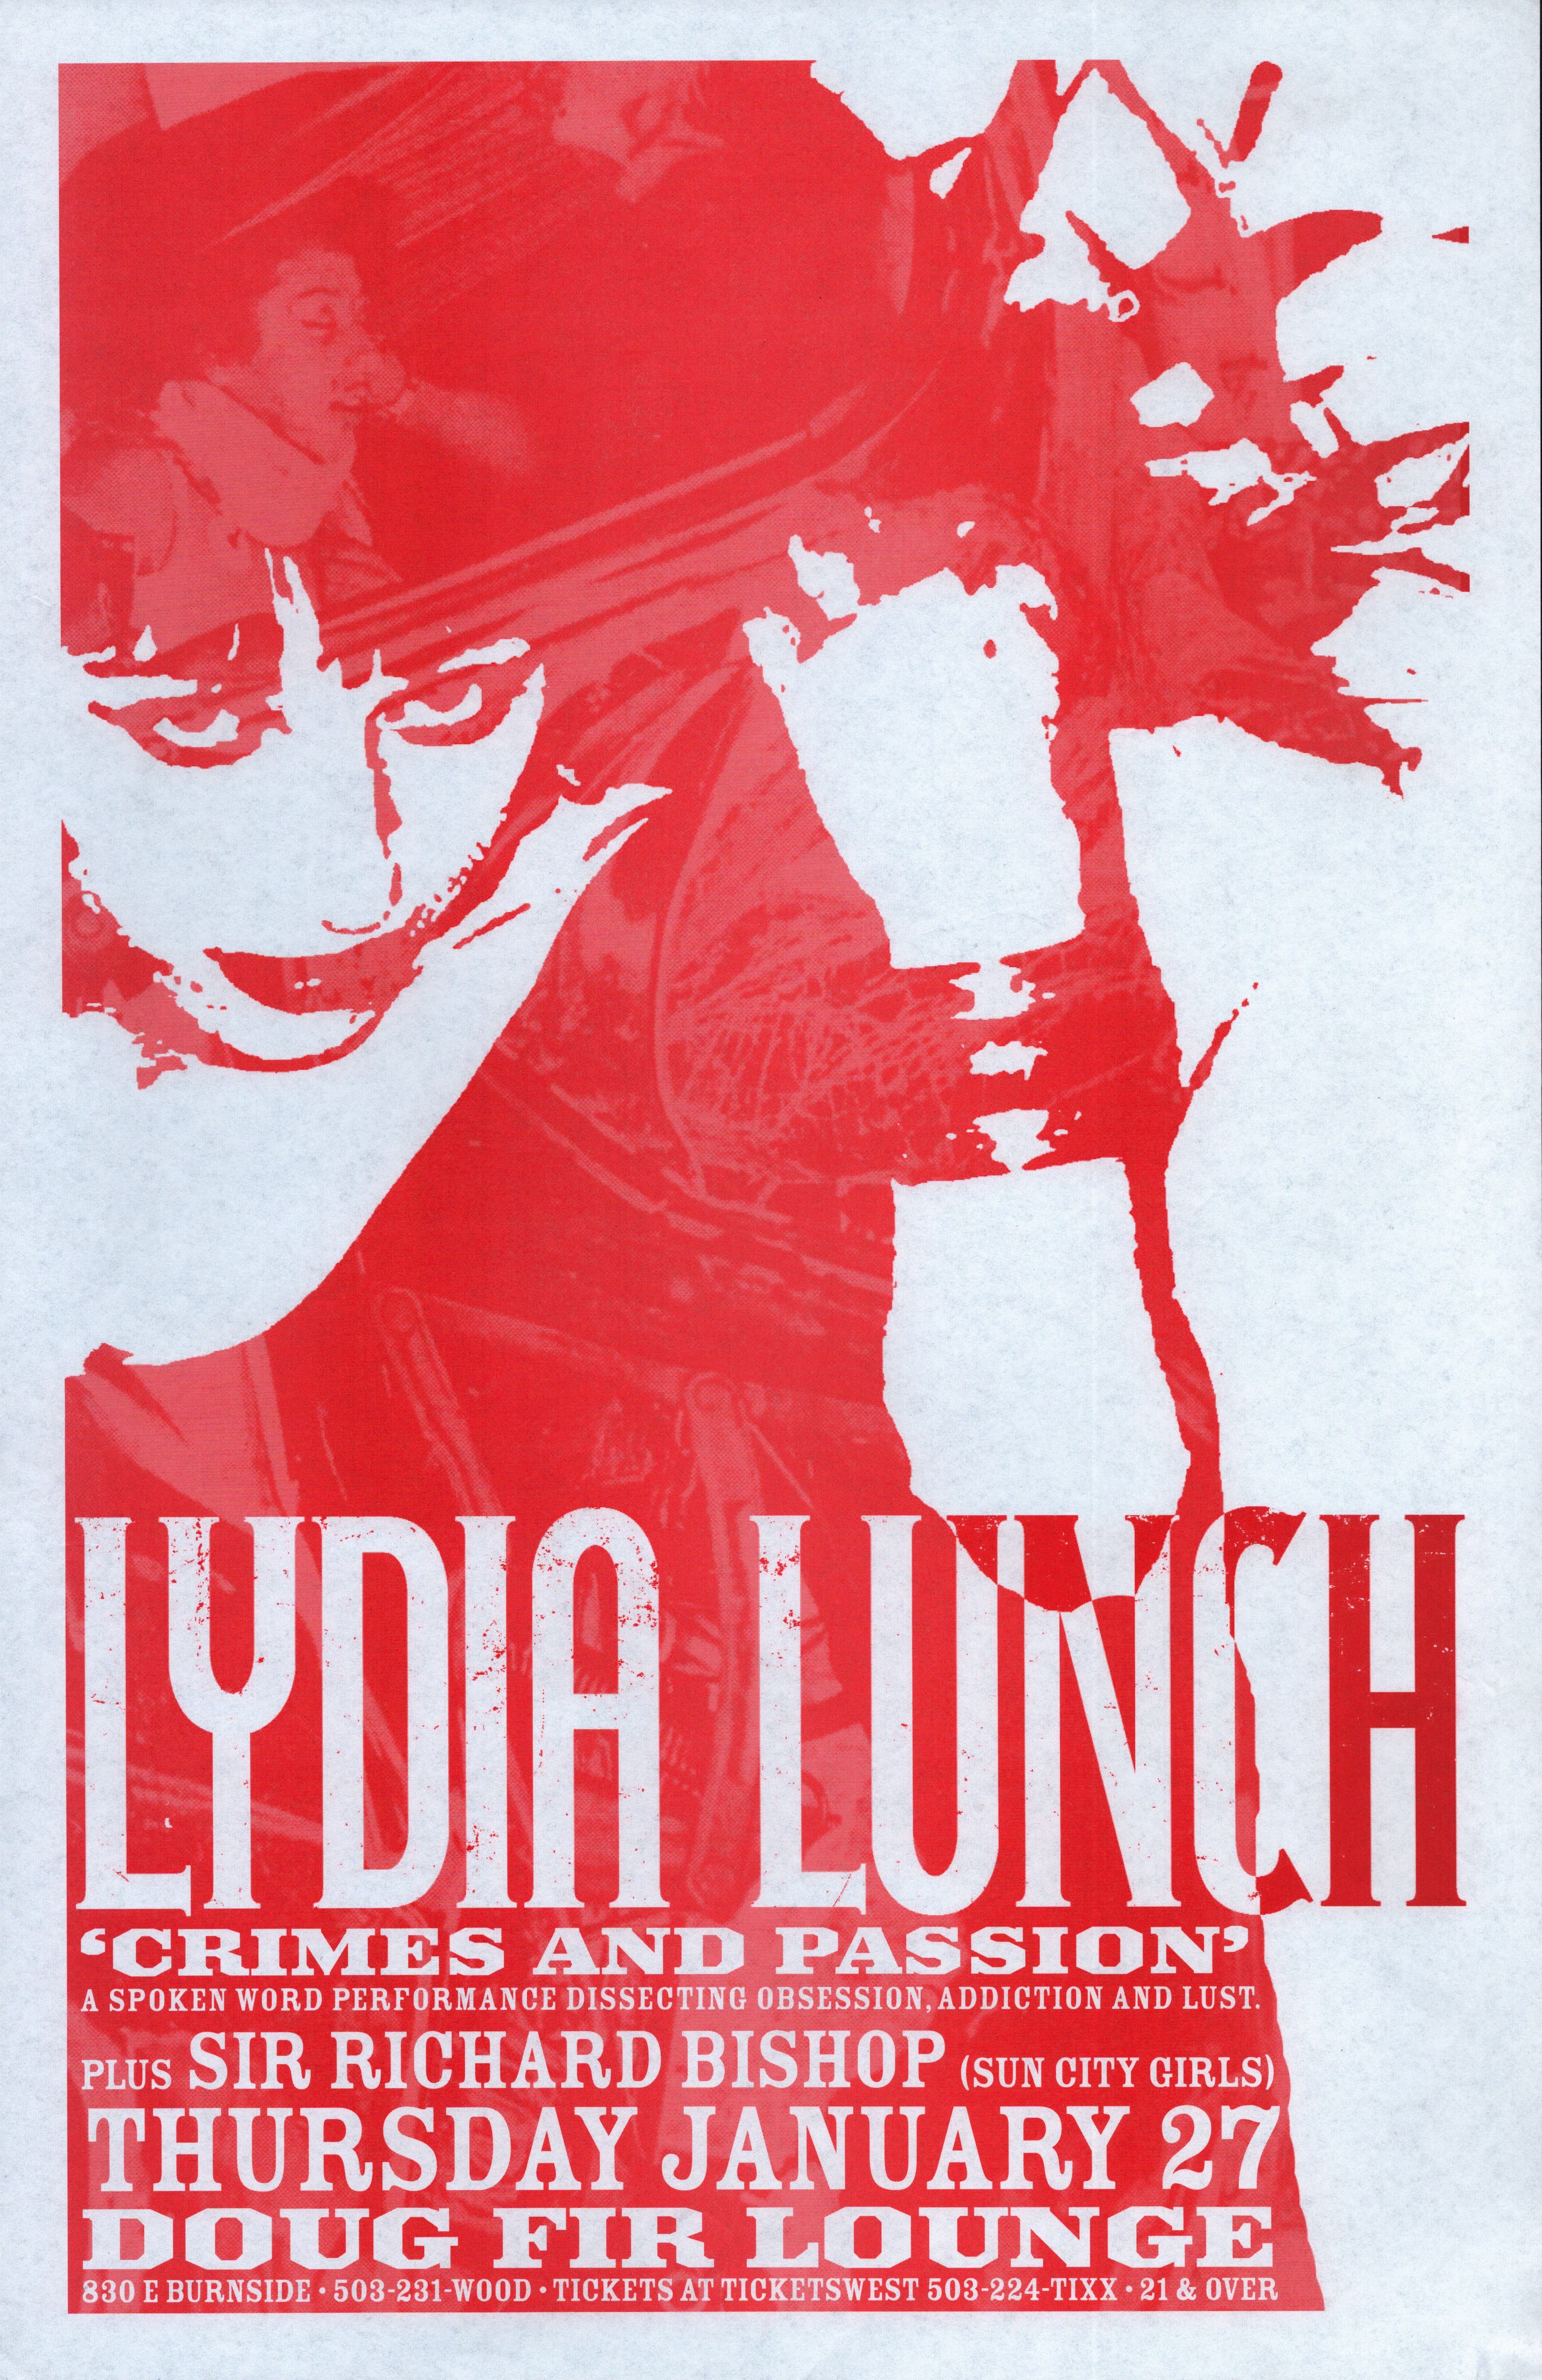 MXP-253.1 Lydia Lunch Doug Fir 2005 Concert Poster